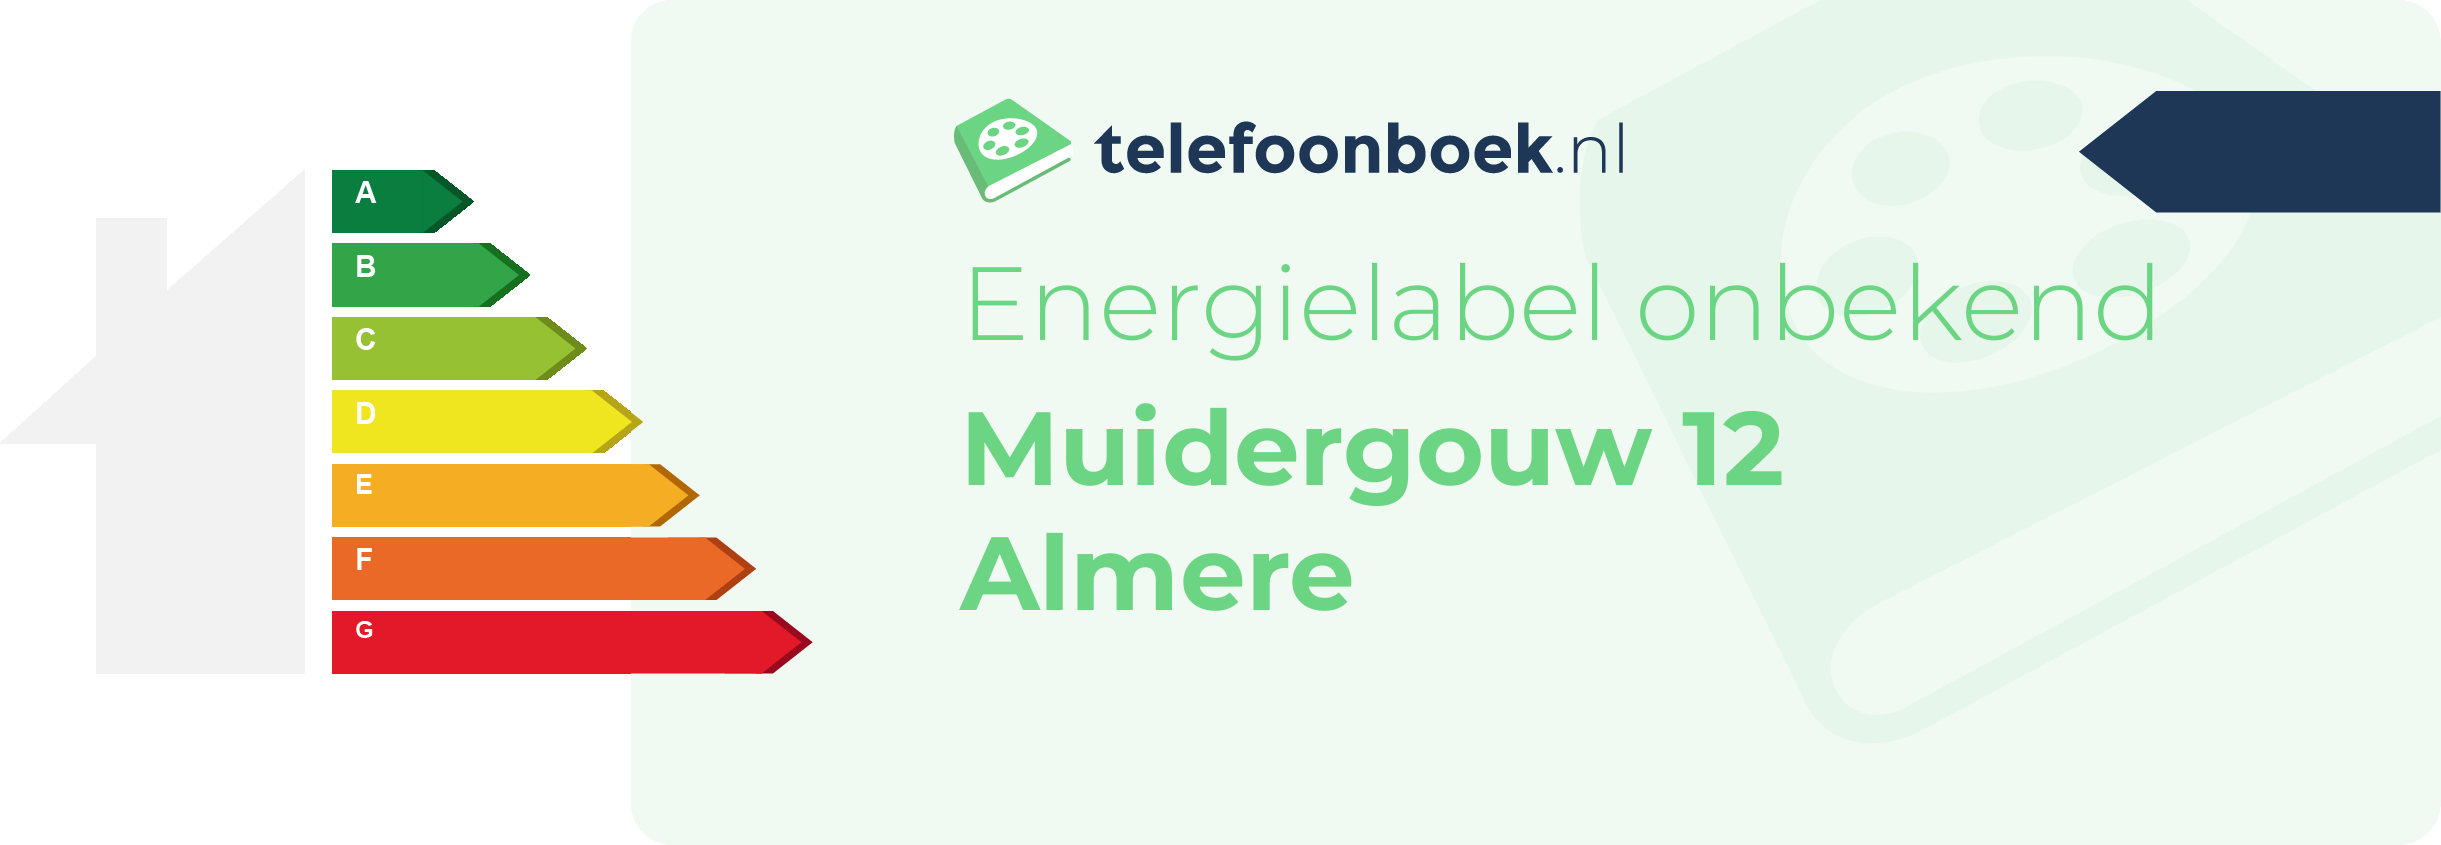 Energielabel Muidergouw 12 Almere